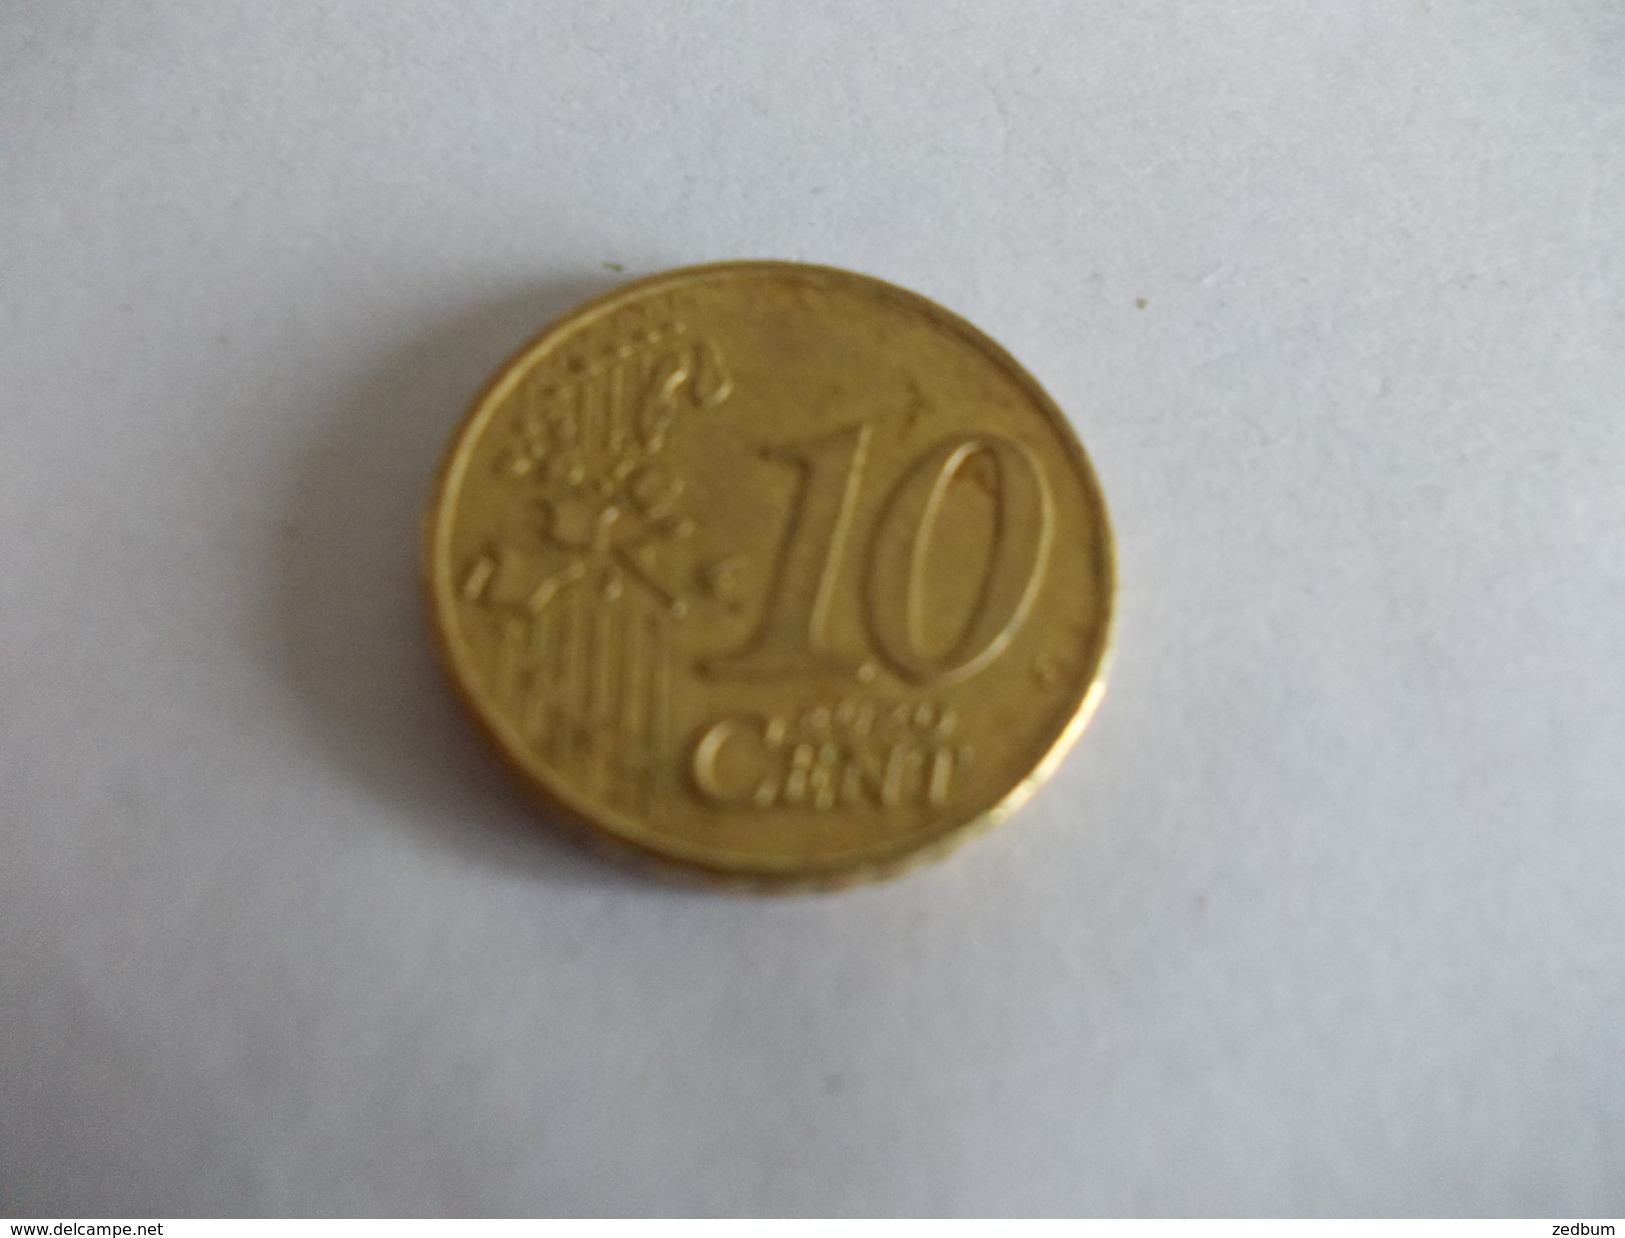 Monnaie Pièce De 10 Centimes D' Euro De Pays Bas Année 2001 Valeur Argus 1 &euro; - Nederland